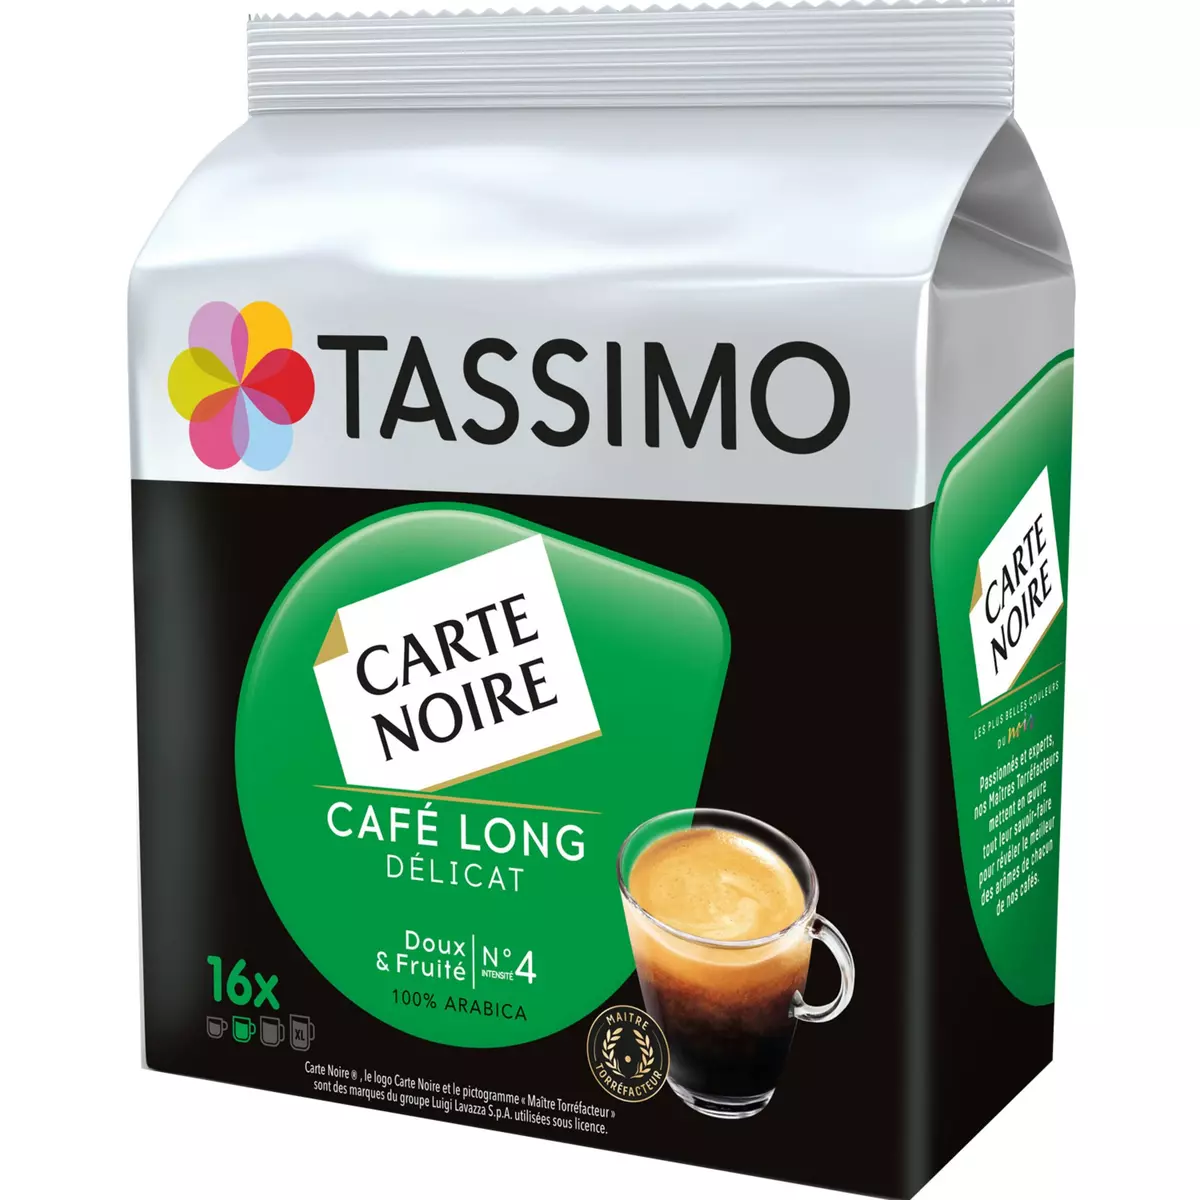 TASSIMO Café dosettes carte noire petit dejeuner classique - Lot de 5x 16  boissons - Cdiscount Au quotidien